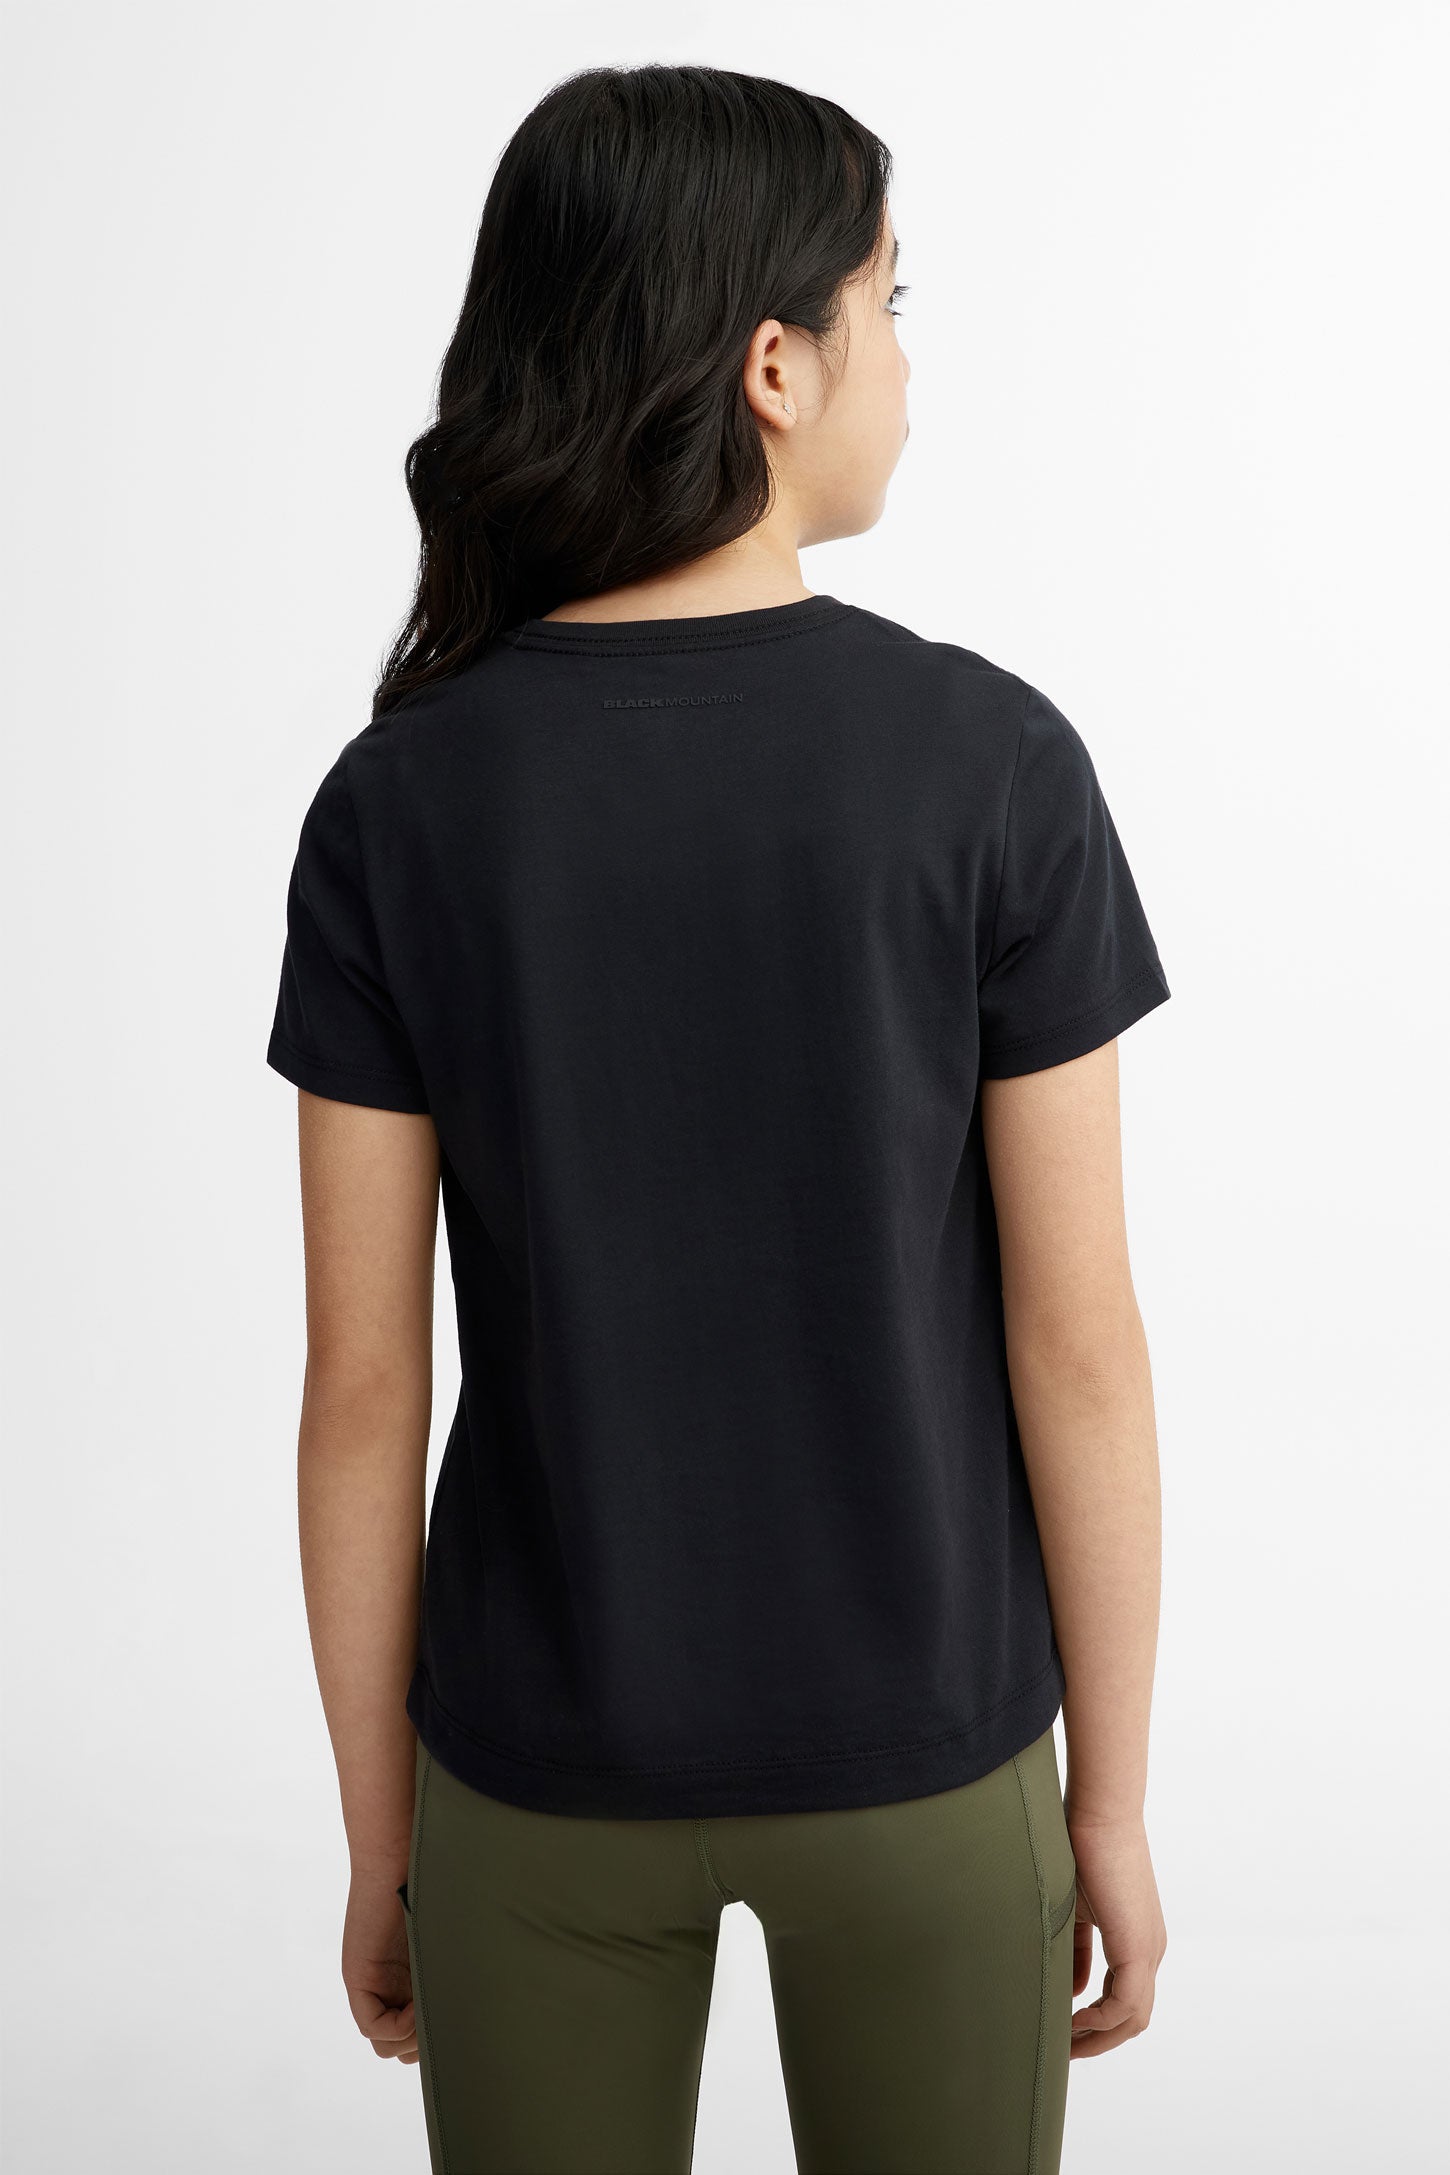 T-shirt col rond coton bio BM, 2/40$ - Ado fille && NOIR